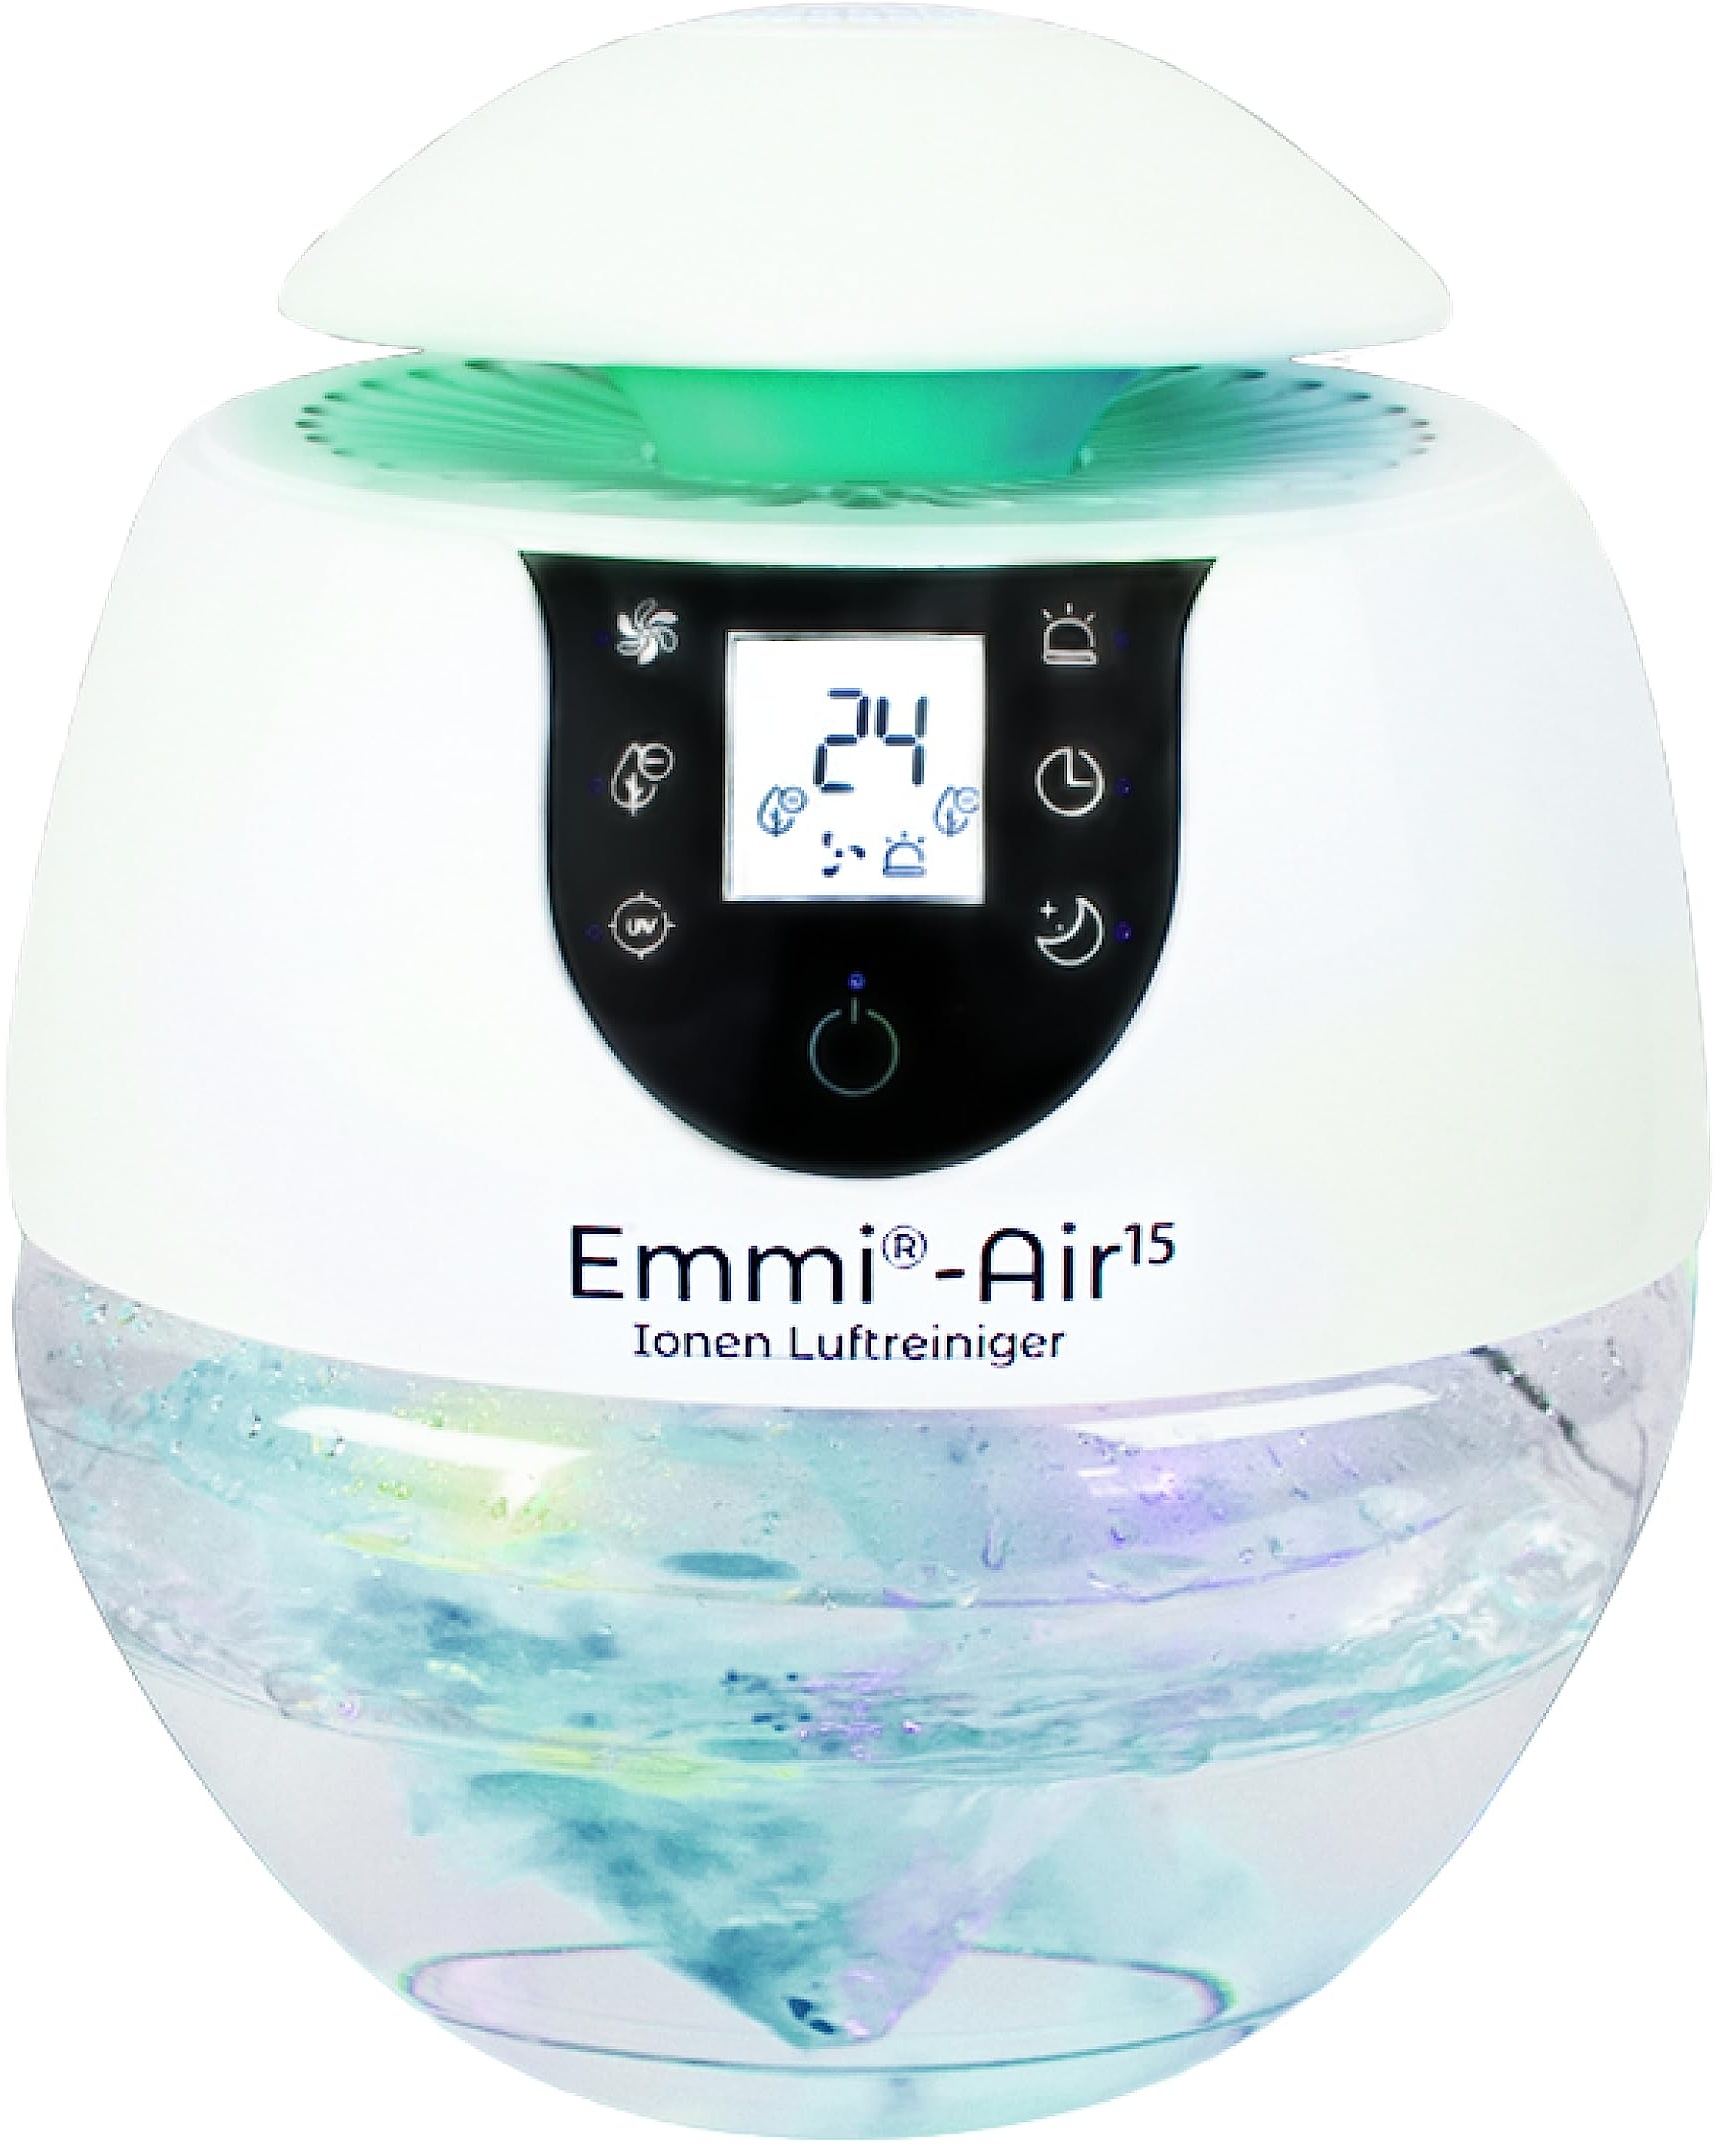 Emmi Air Ionen Luftreiniger Allergiker für bis zu 35 m2, Air Purifier mit geruchsneutralisierenden Ionen, Ideal gegen Staub, Viren, Pollen, Acrylgeruch